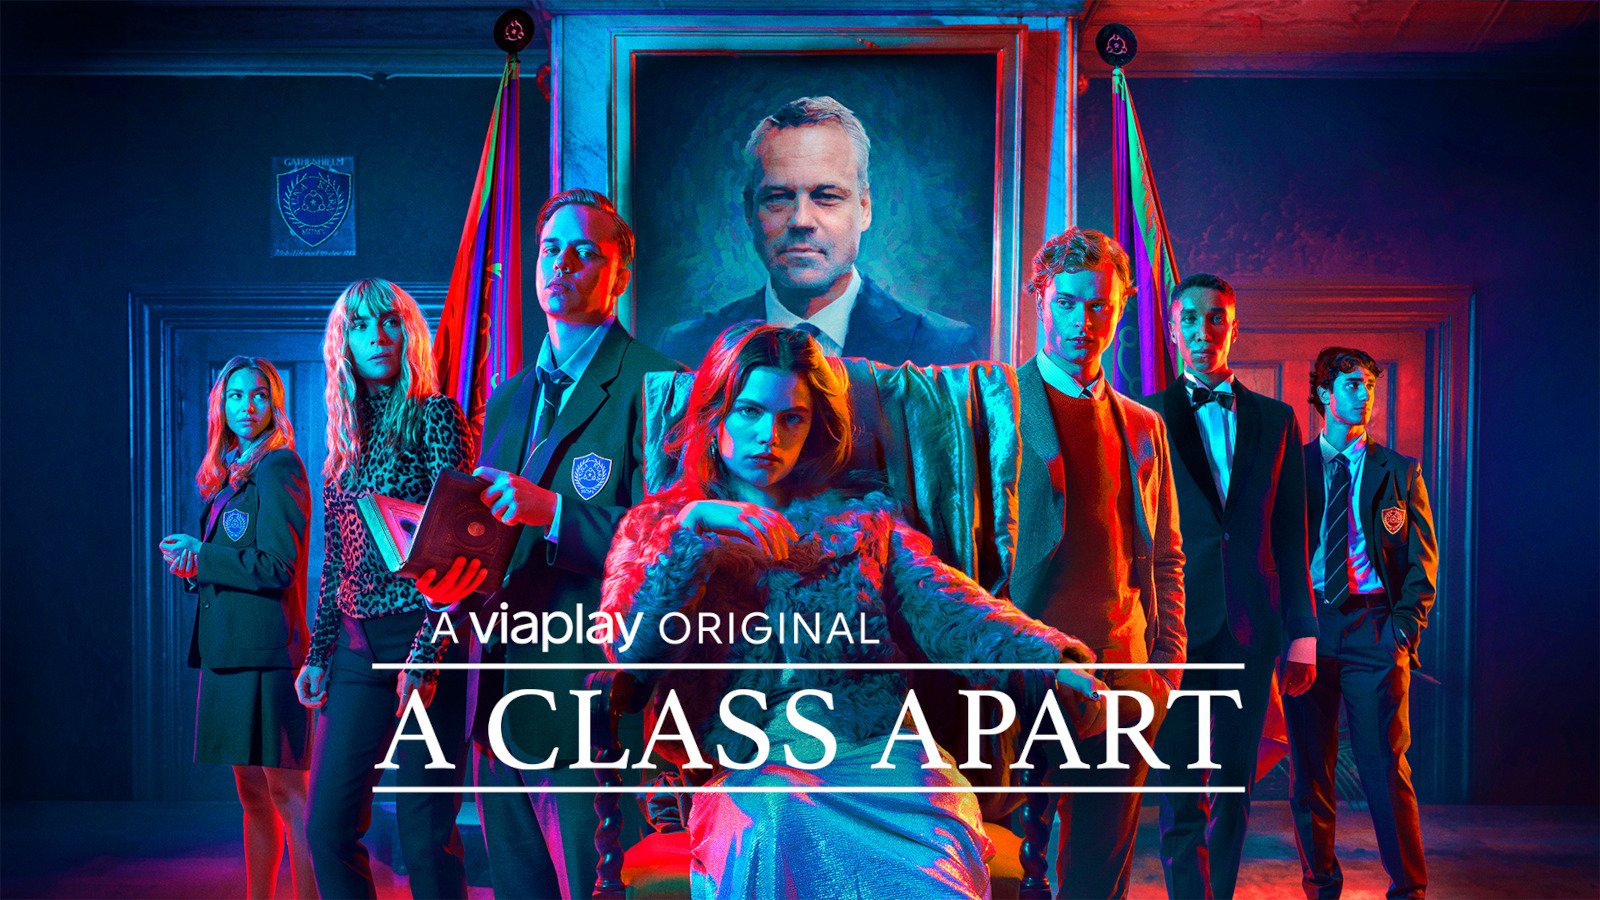 Review: A Class Apart (season 1)